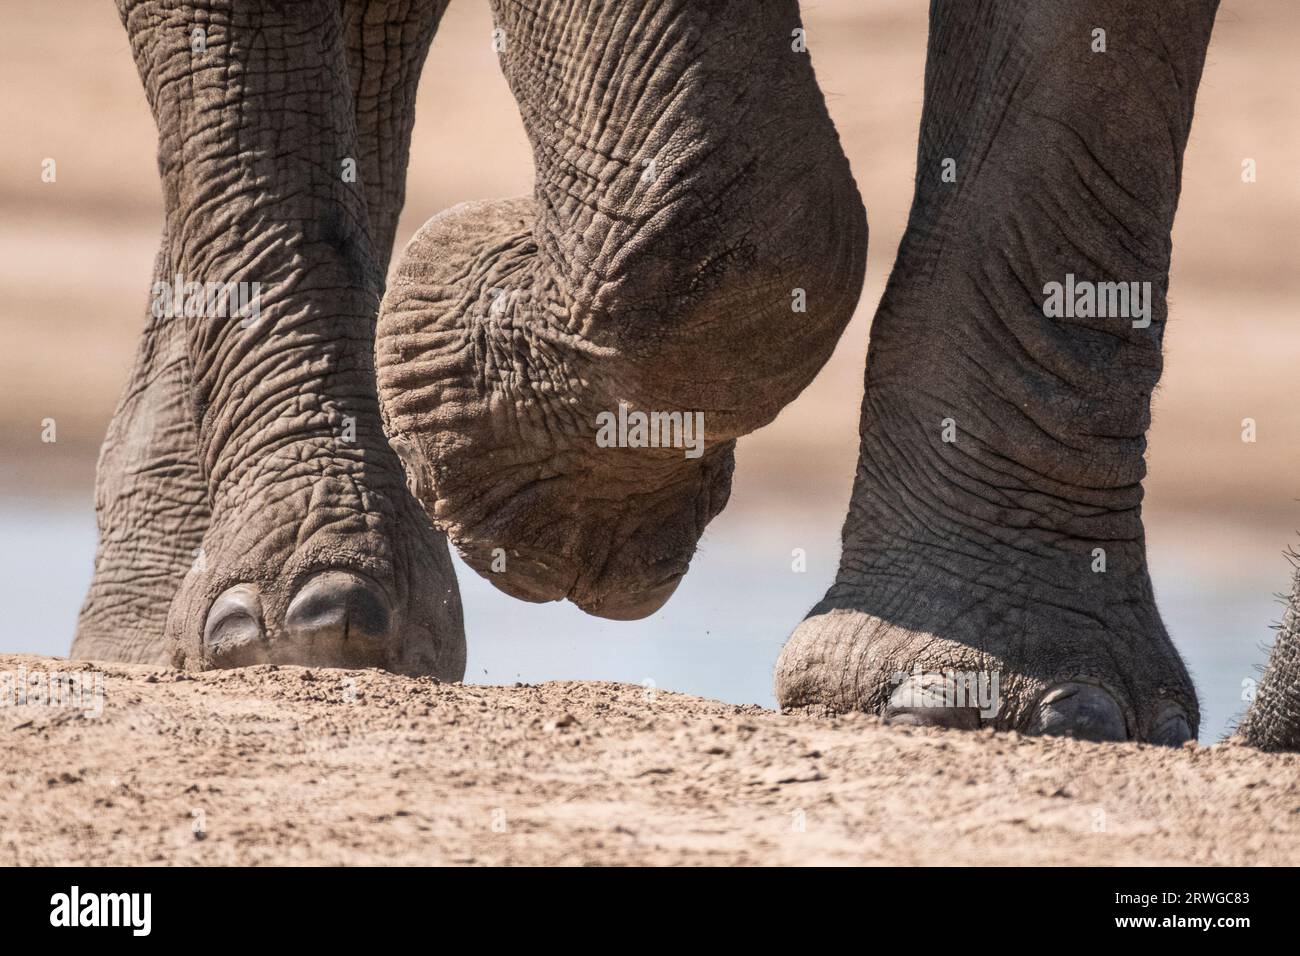 Primo piano dei piedi di elefante africano. L'animale sta camminando, un piede anteriore sollevato. Acqua di fondo. Parco nazionale di South Luangwa, Zambia Foto Stock